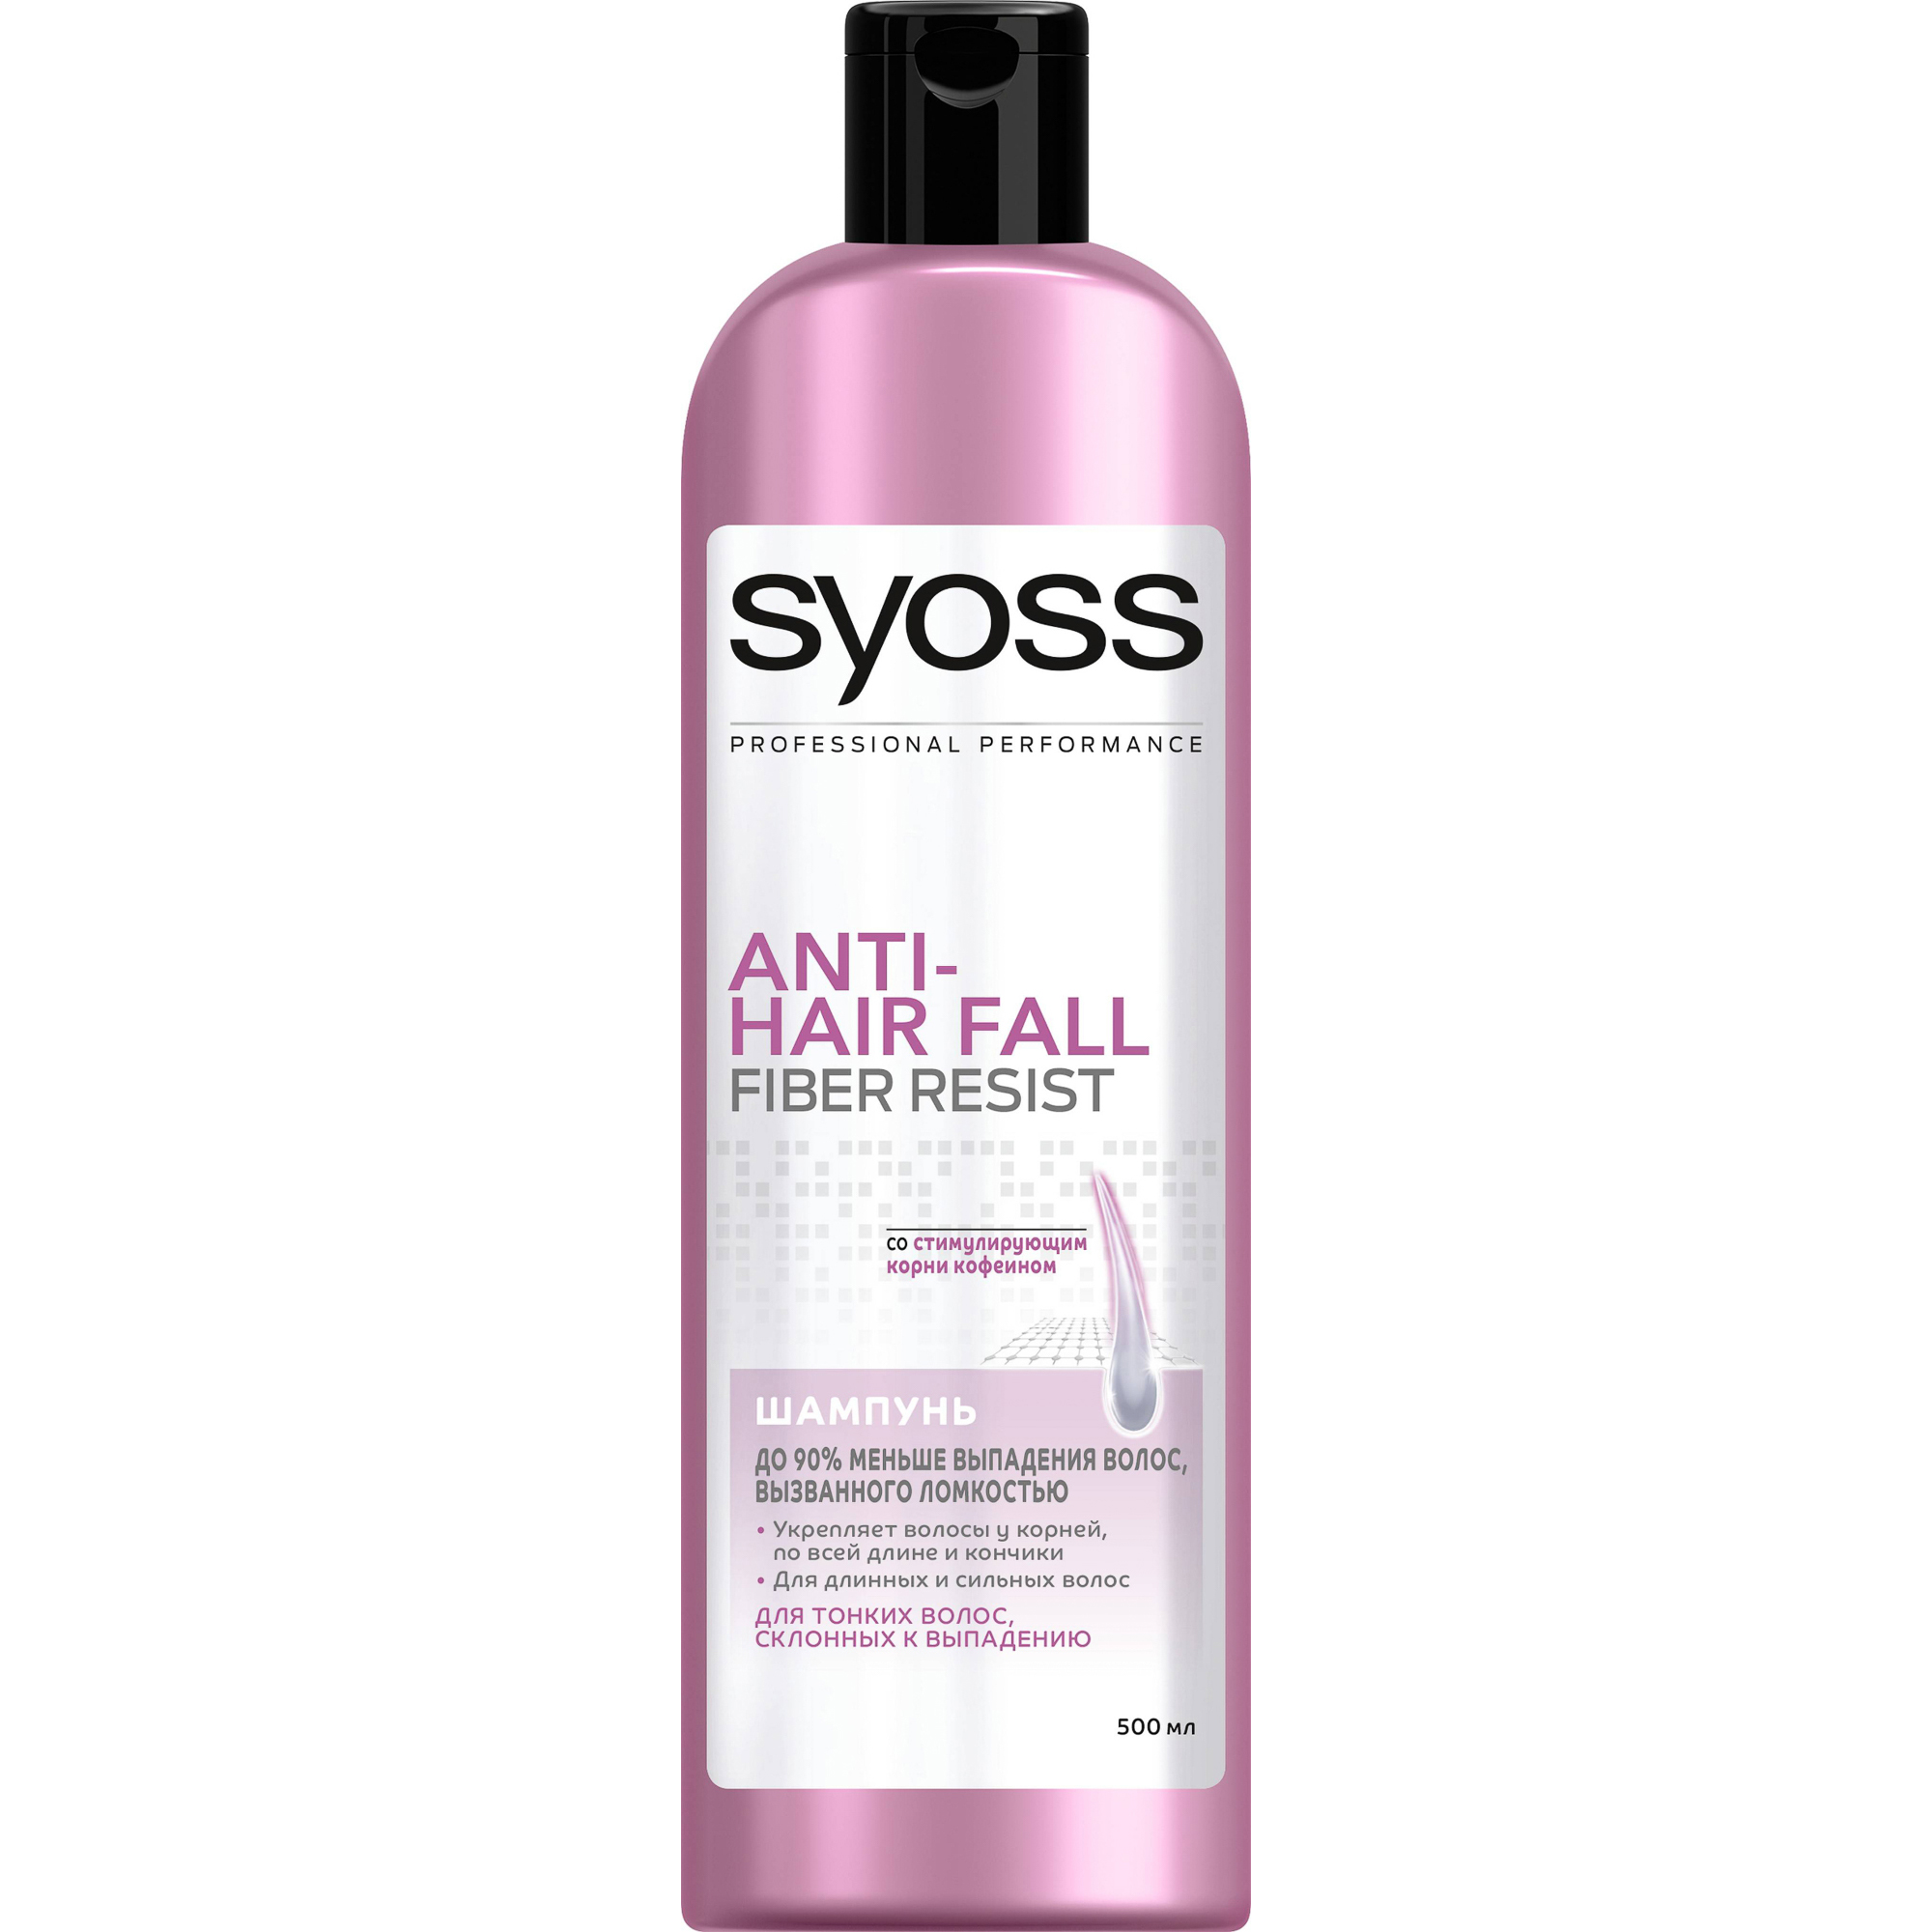 бальзам syoss anti hair fall fiber resist 95 для склонных к выпадению волос 500 мл Шампунь Syoss Anti-Hair Fall 500 мл